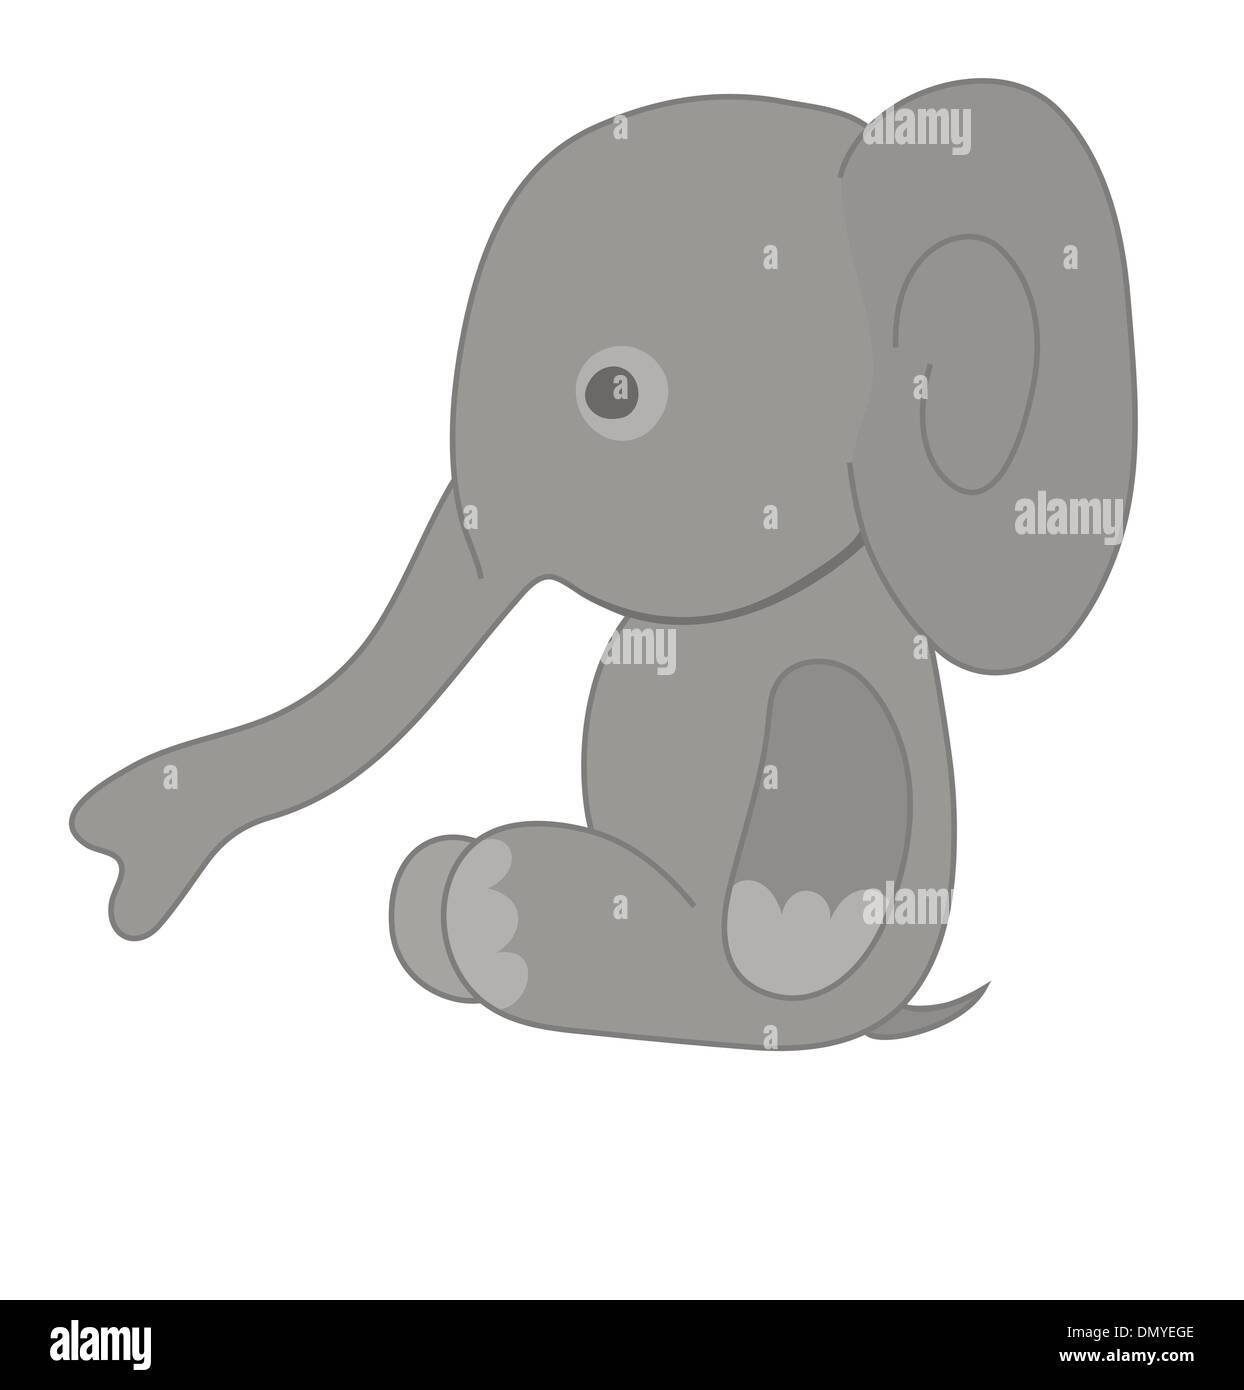 Vektor-Illustration von kleinen grauen Elefanten Stock Vektor